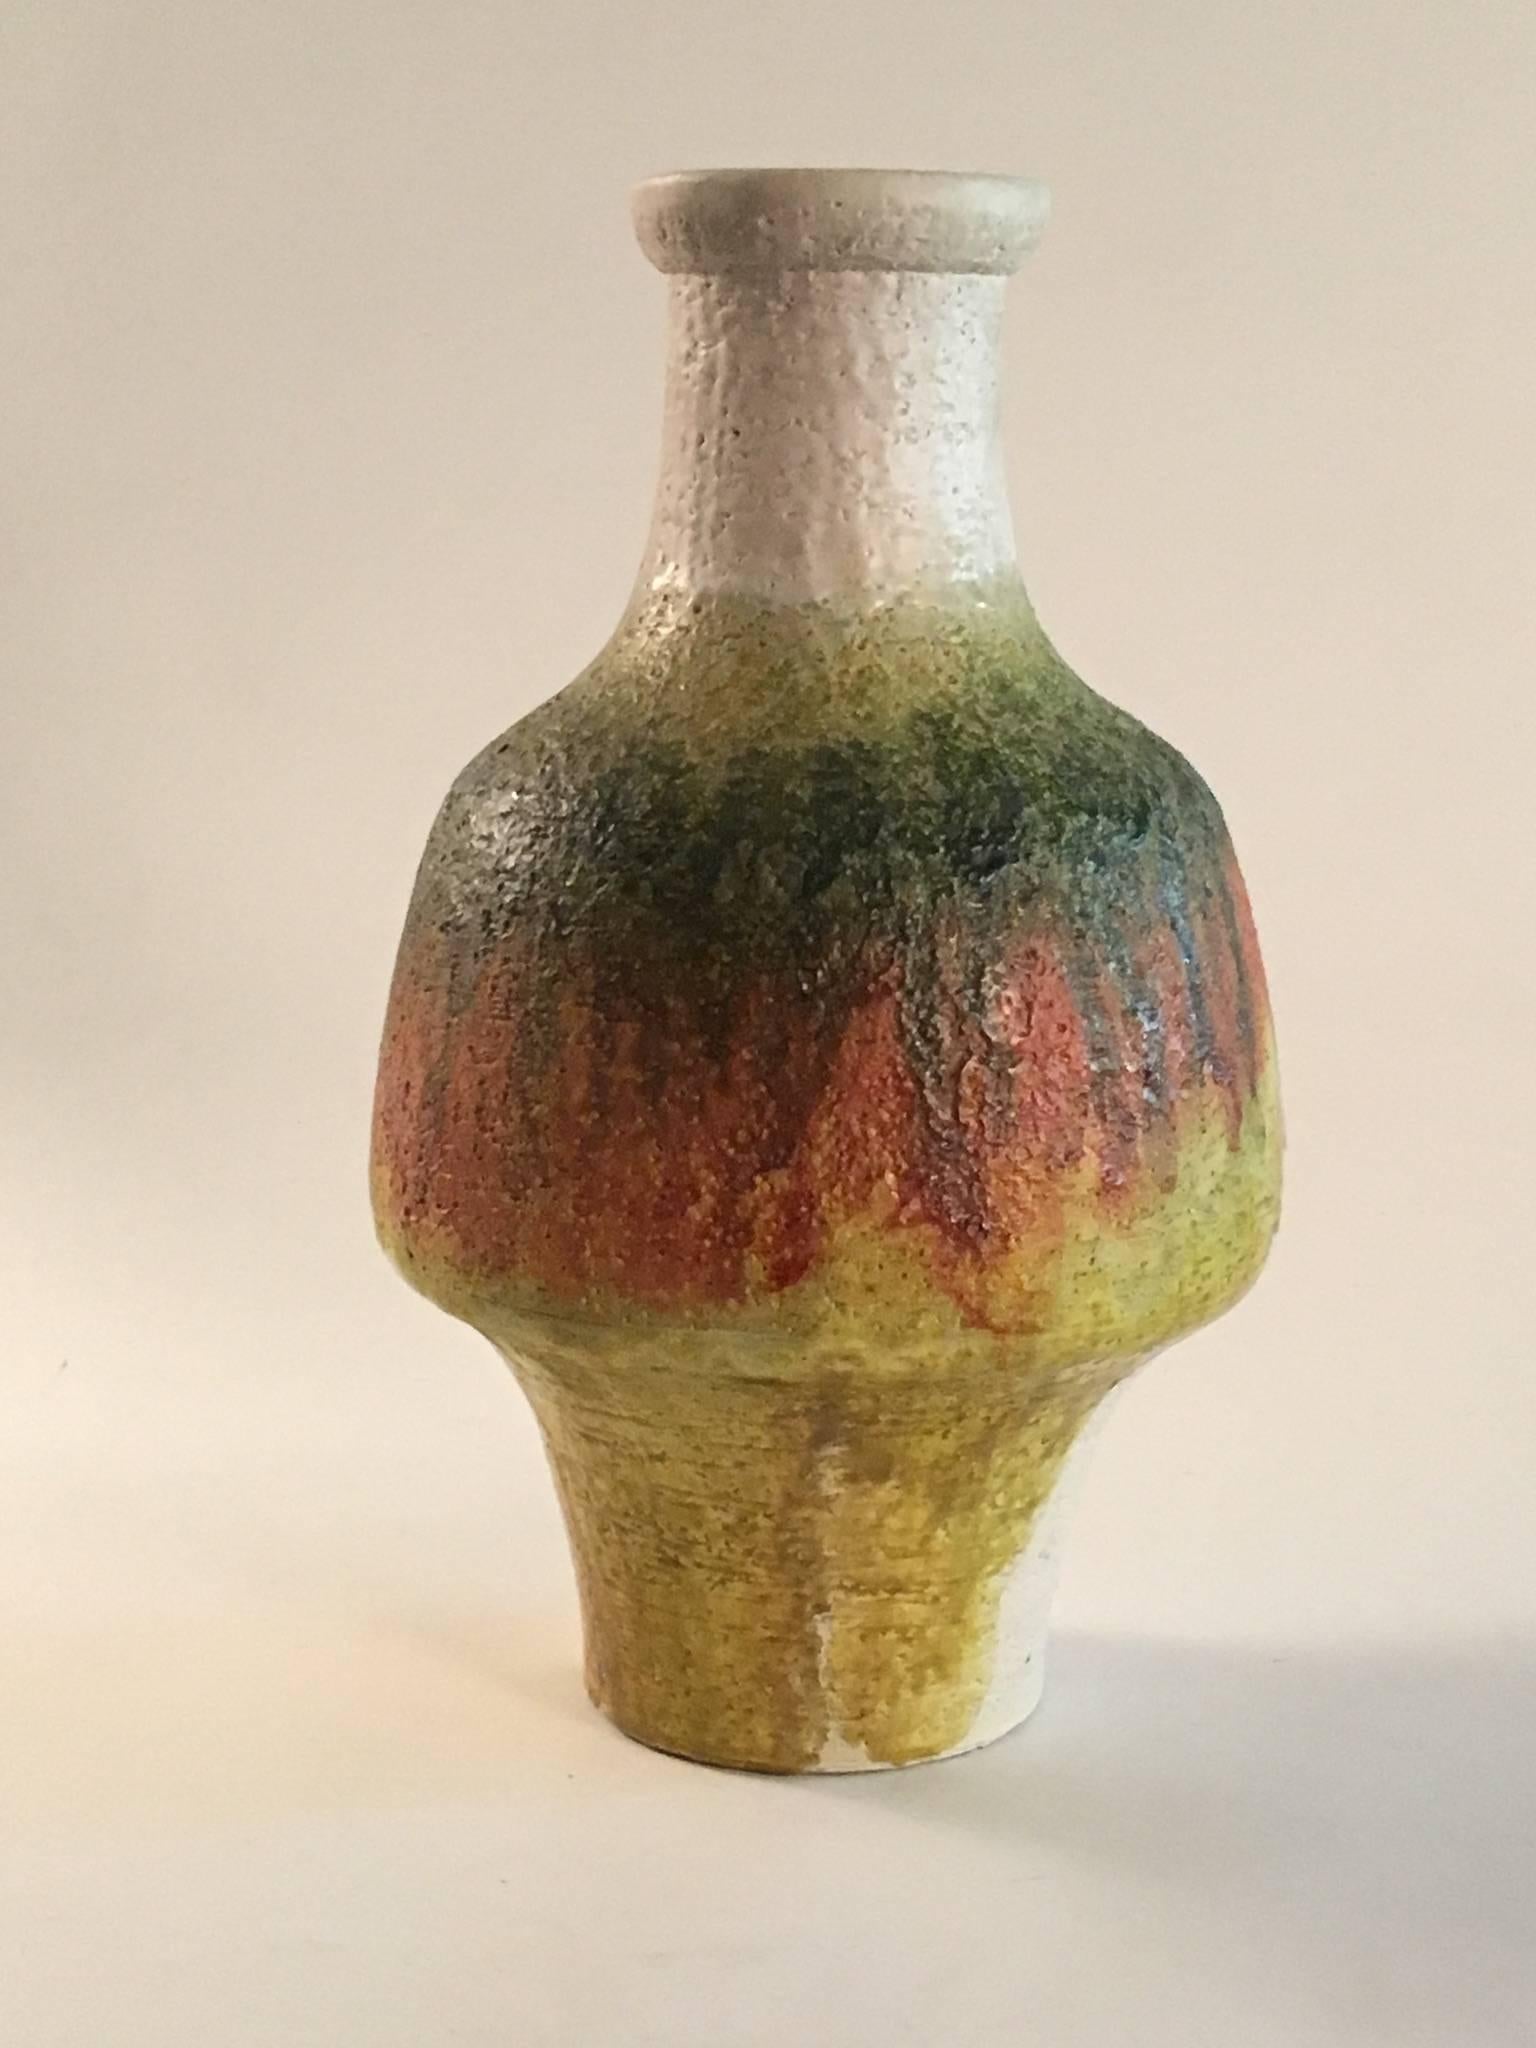 Eine schöne signierte Marcello Fantoni taillierte Form Vase von großer Größe. Dekoriert mit tropfenden, matten Glasuren in Grün, Orange und Gelb über einem cremefarbenen Scherben. Darunter unterschrieben. Perfekter Zustand.